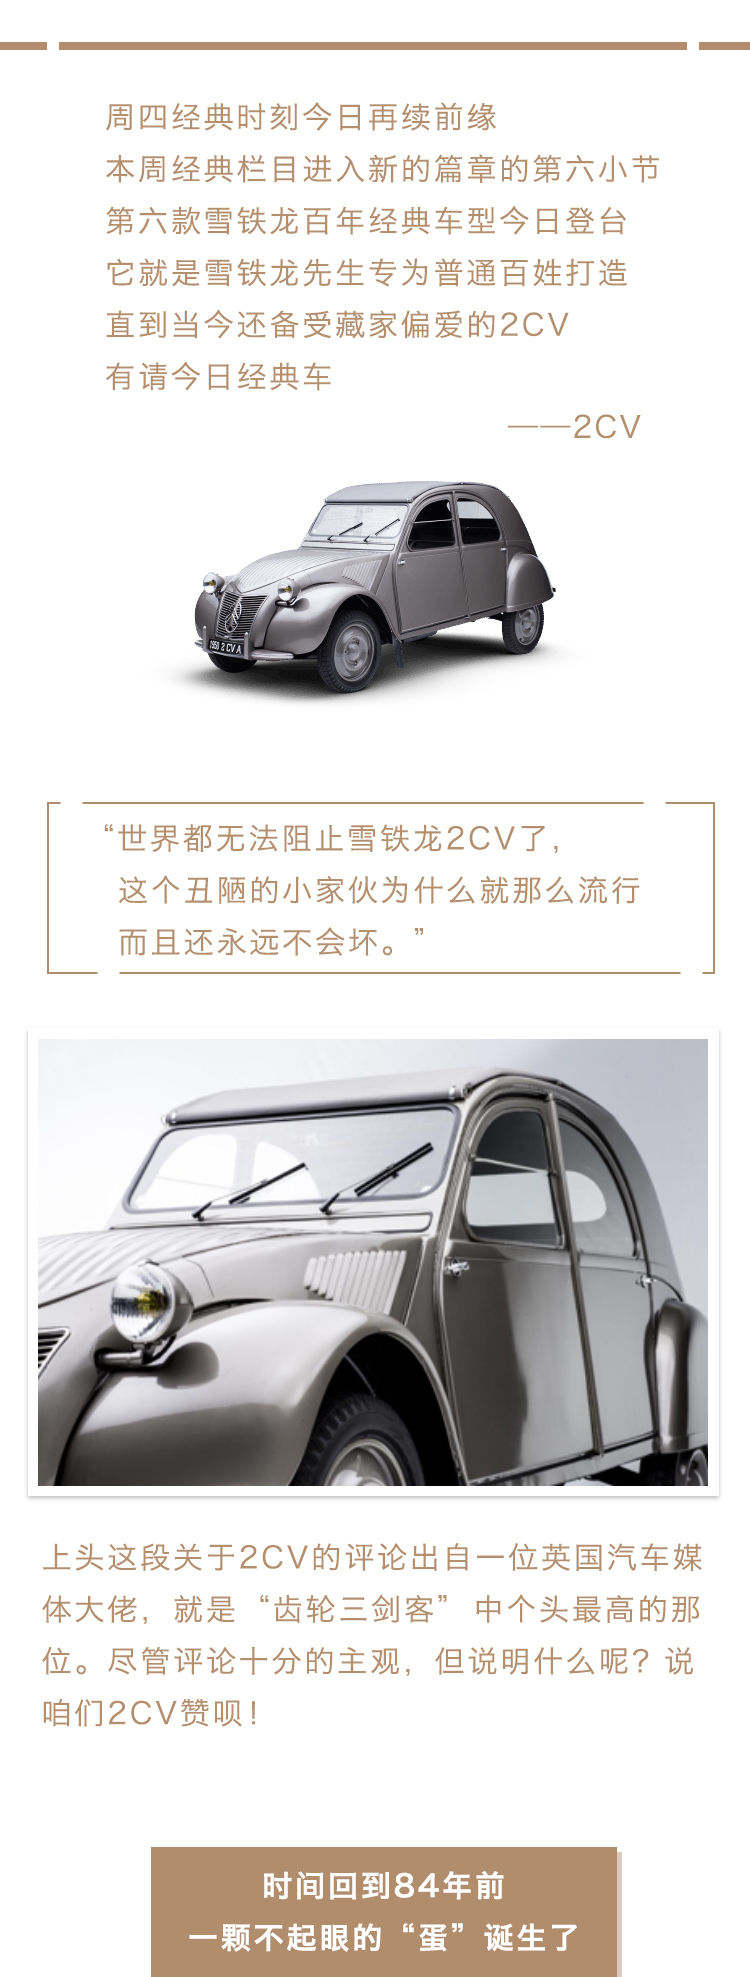 百年品牌Citroen经典历史车之“萌心未泯”